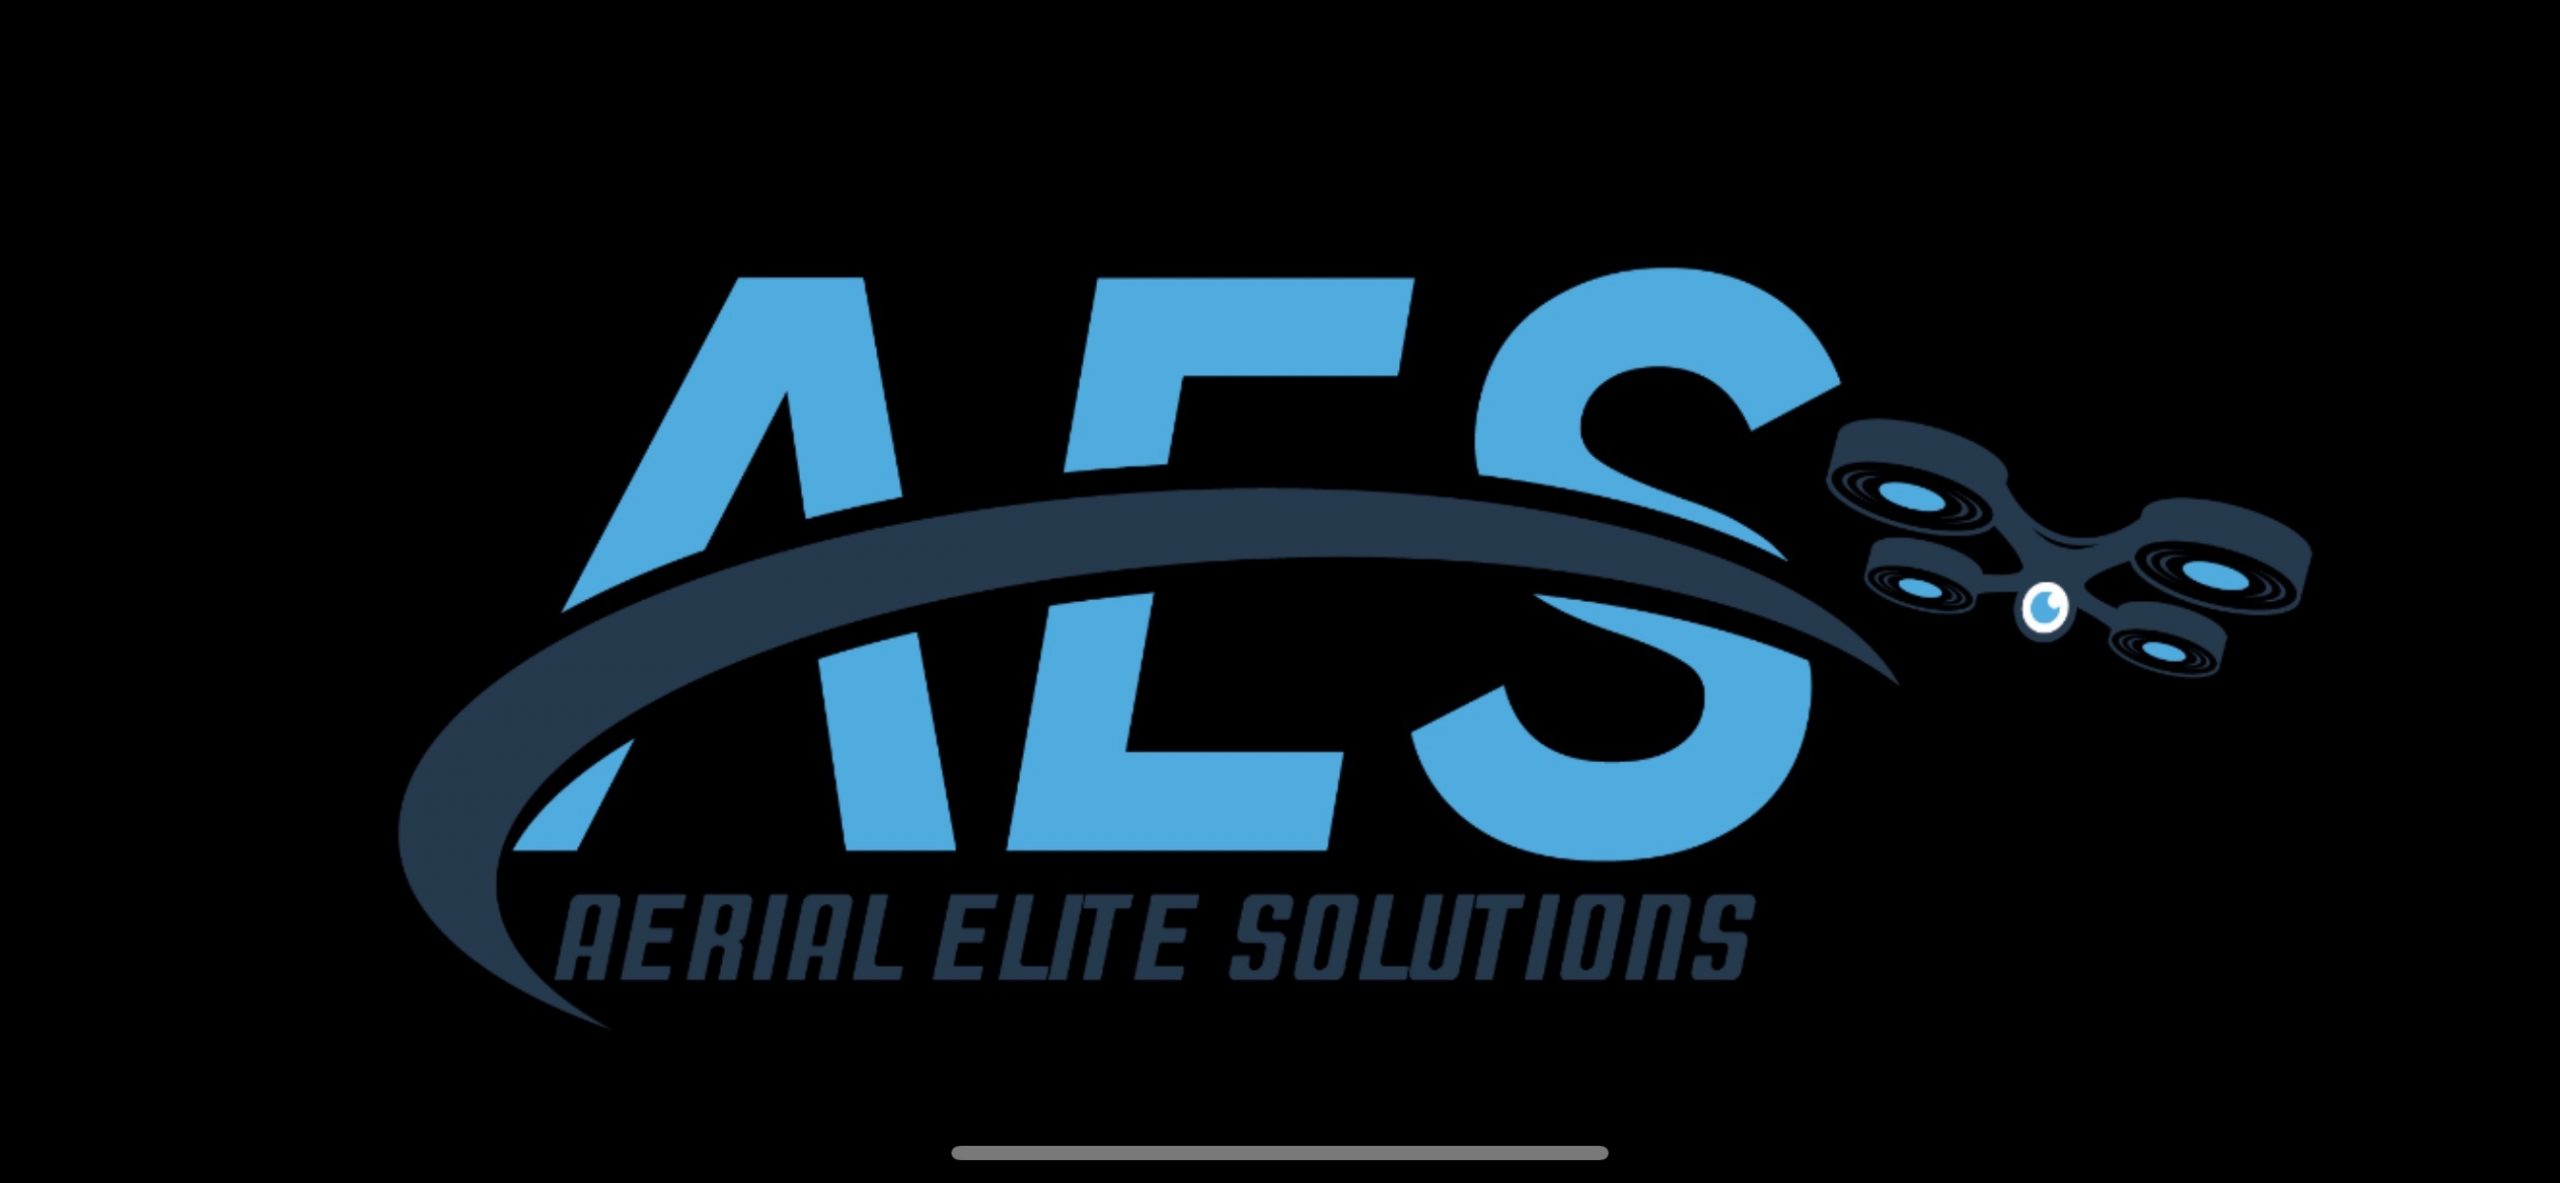 Aerial Elite Solutions, LLC